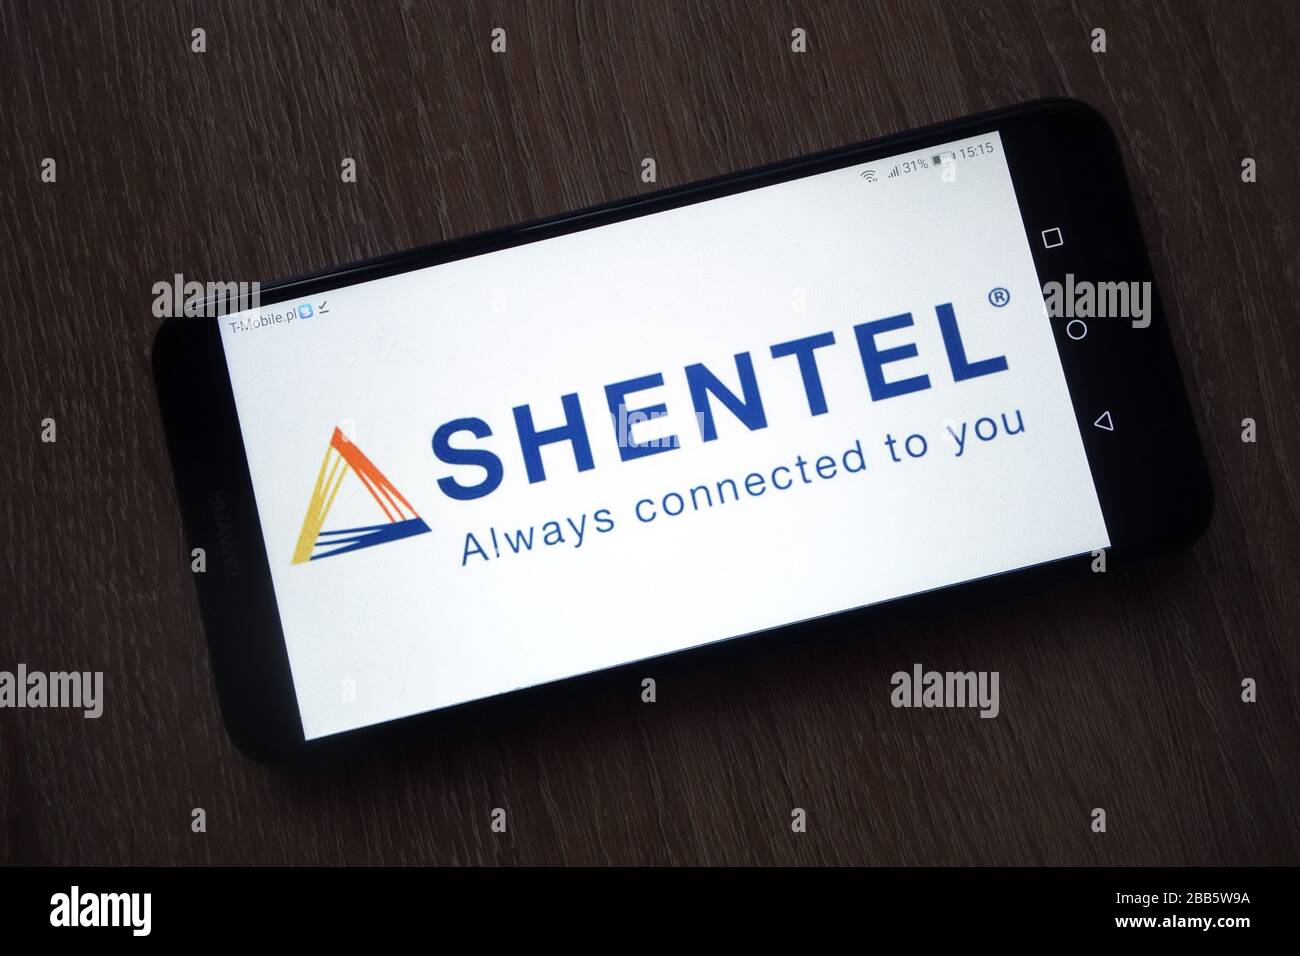 Shenandoah Telecommunications Company (Shentel) logo displayed on smartphone Stock Photo